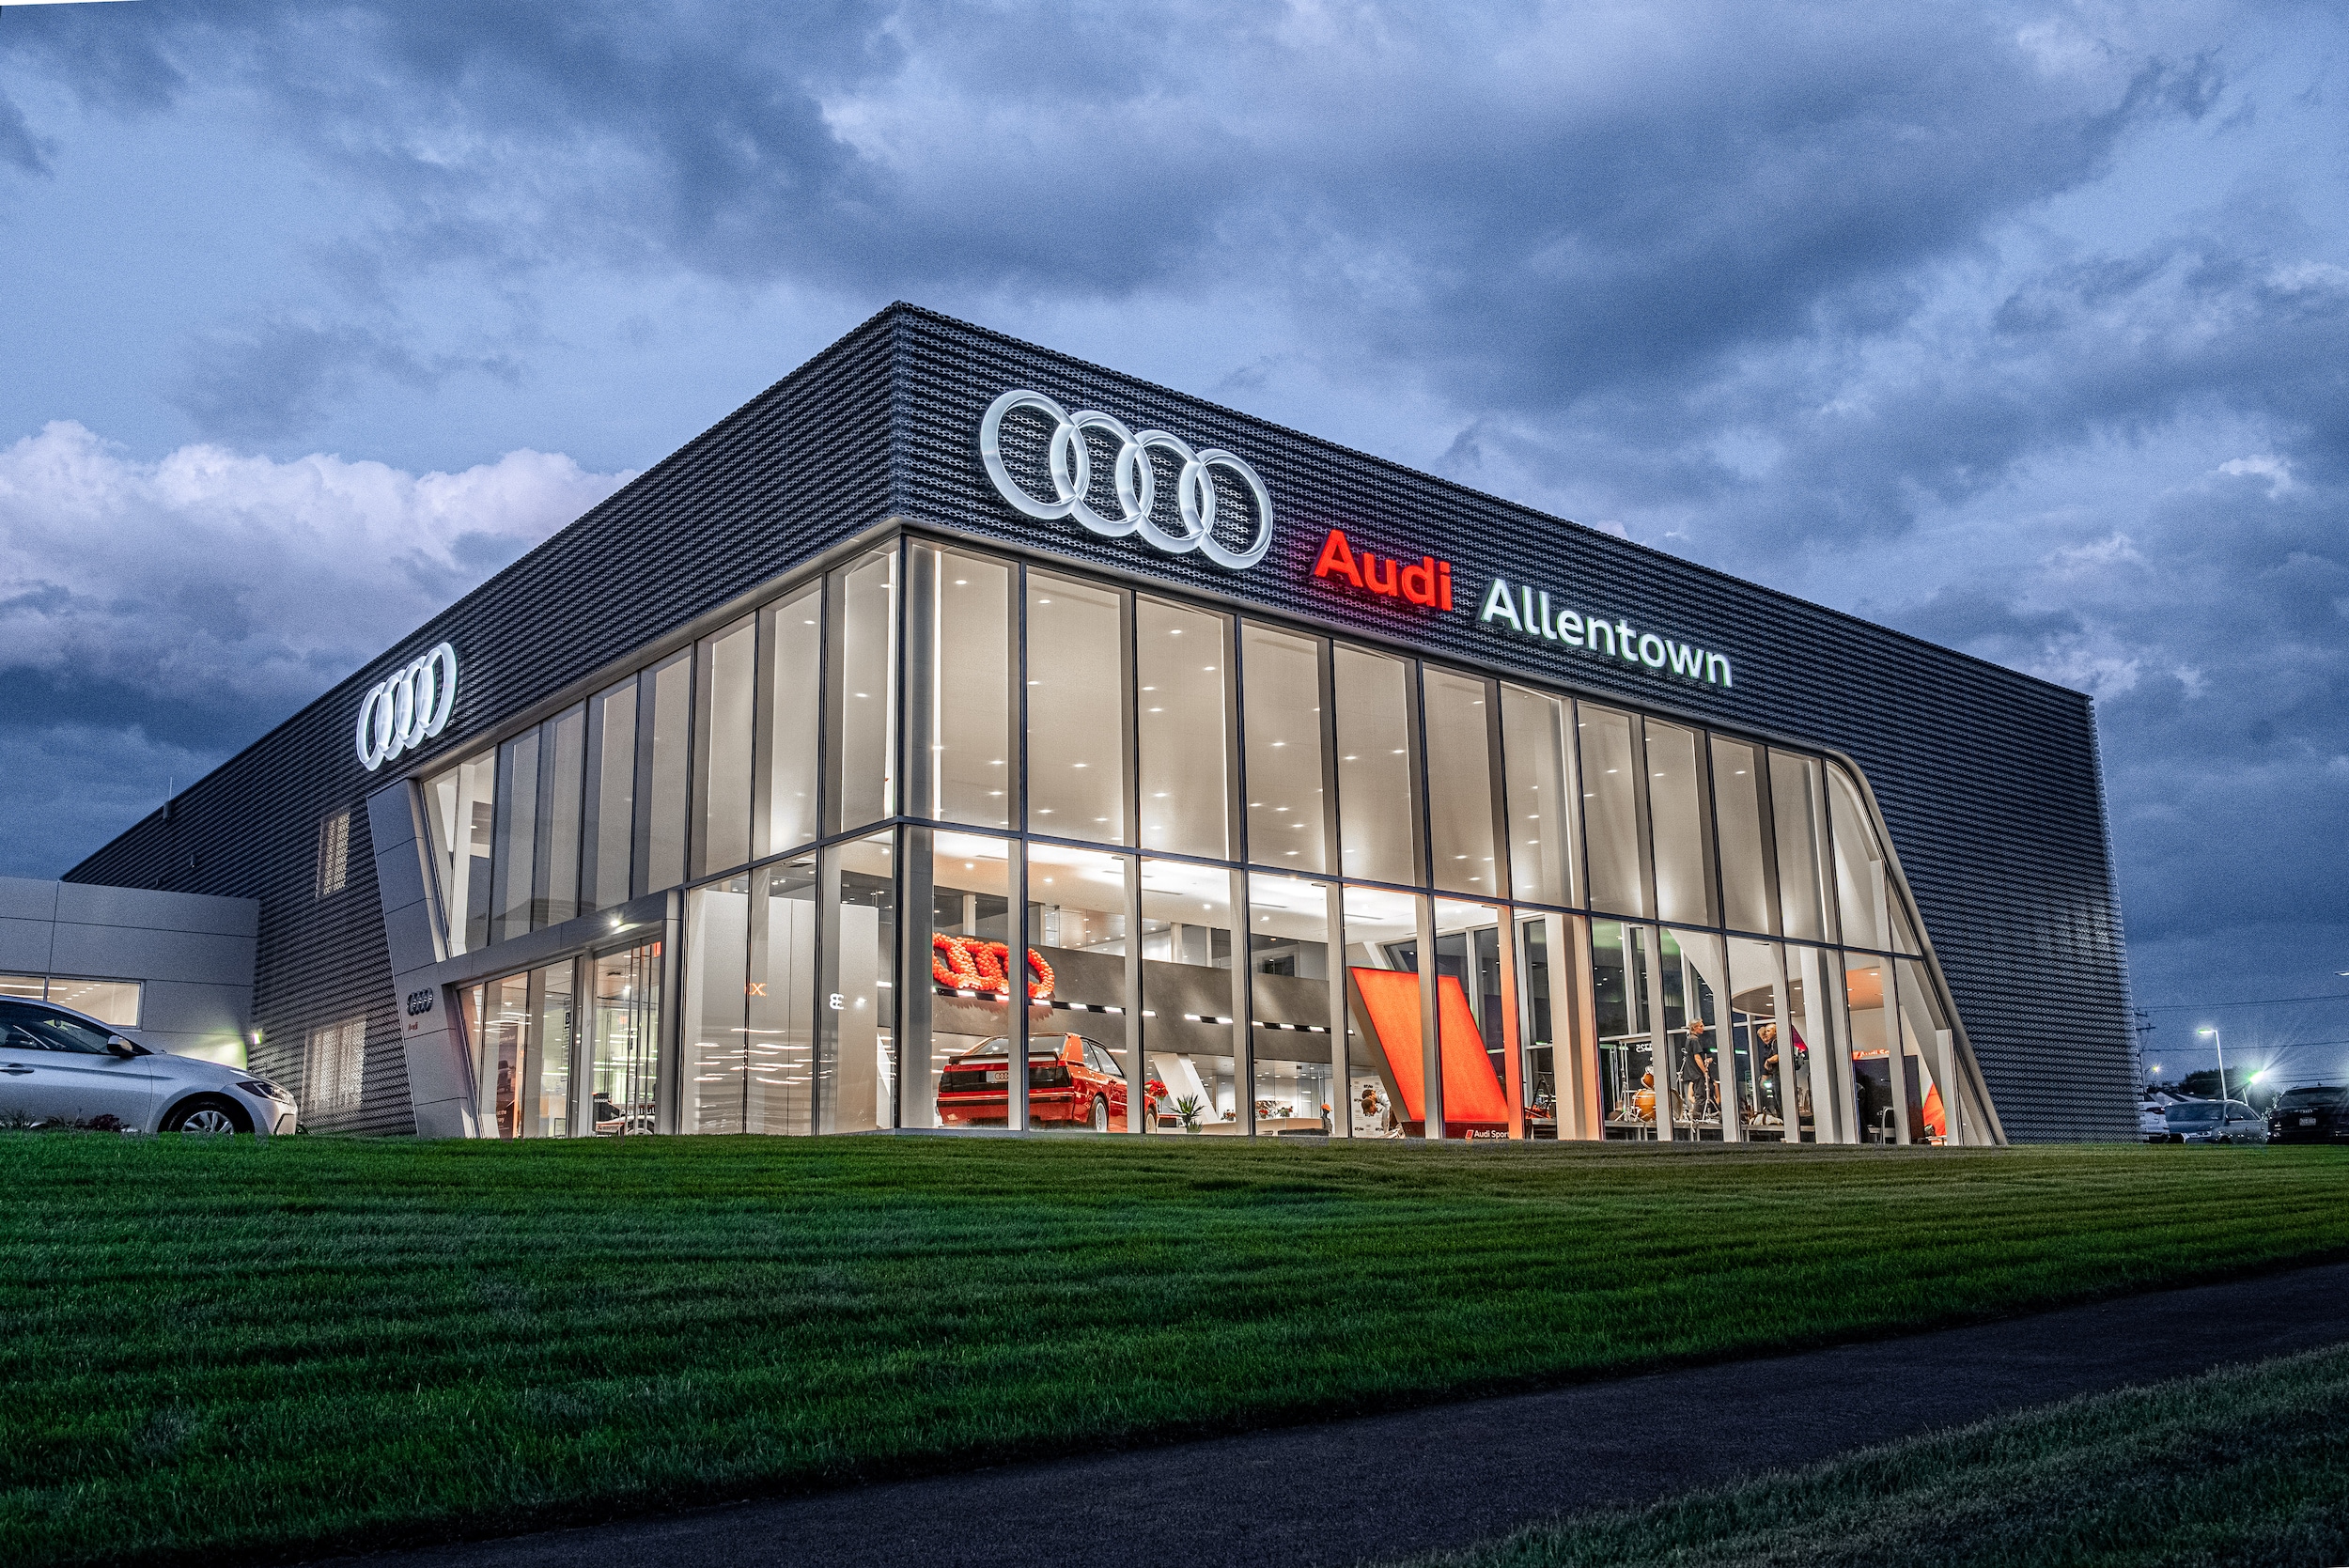 New Audi Peninsula Car Offers